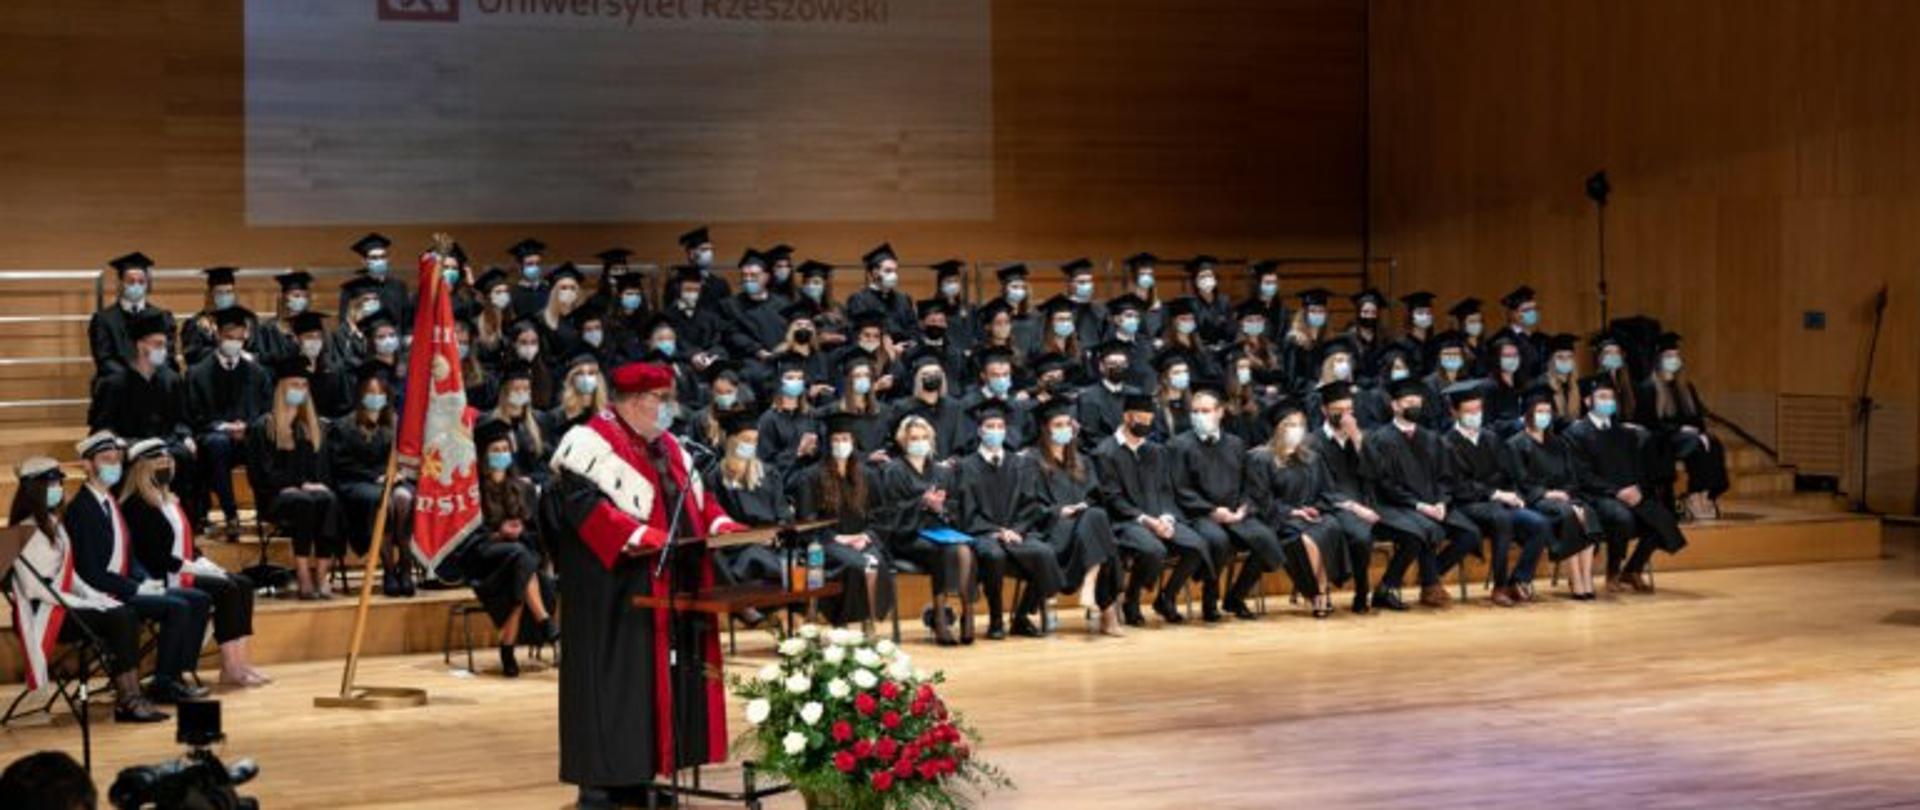 Uroczystość wręczenia dyplomów absolwentom kierunku lekarskiego UR